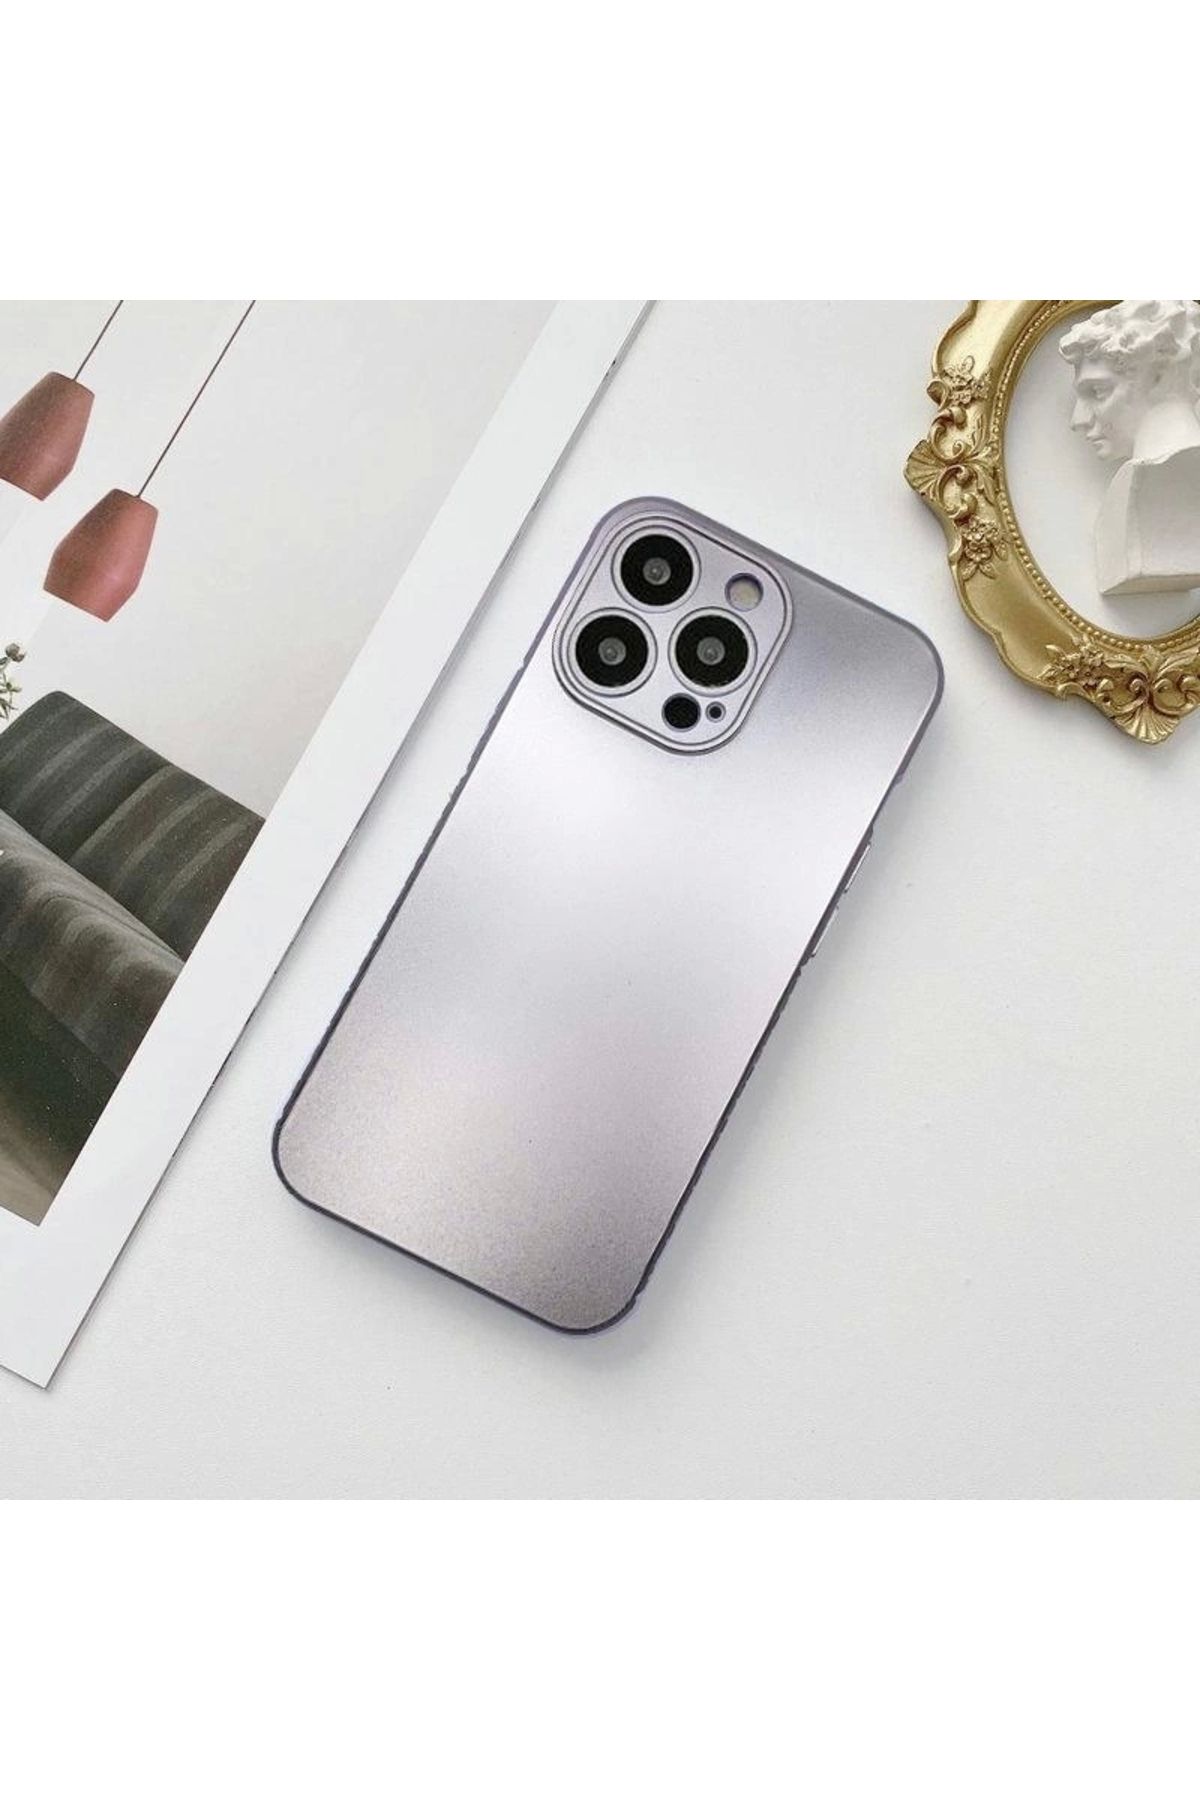 Miscase İphone 13 Metalic Renk Kamera Korumalı Silikon Kılıf